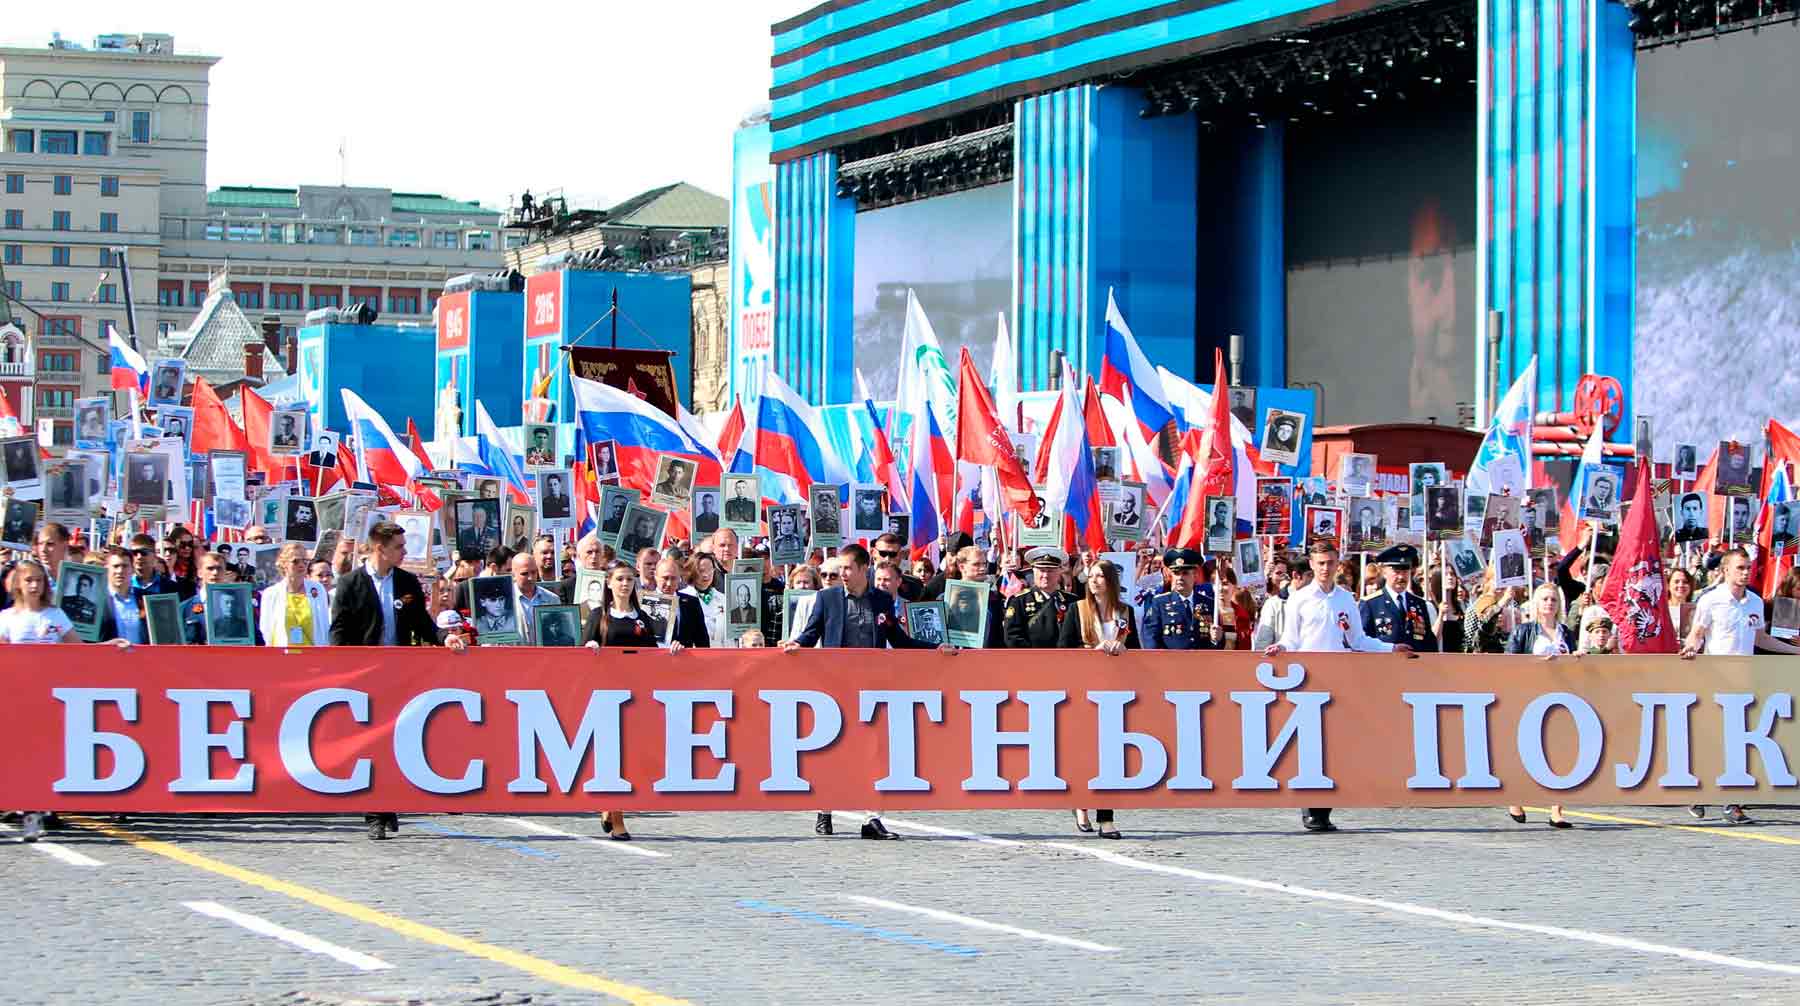 Председатель центрального штаба движения Василий Лановой предложил провести шествие 9 мая 2021 года Фото: © Global Look Press / Dmitry Golubovich